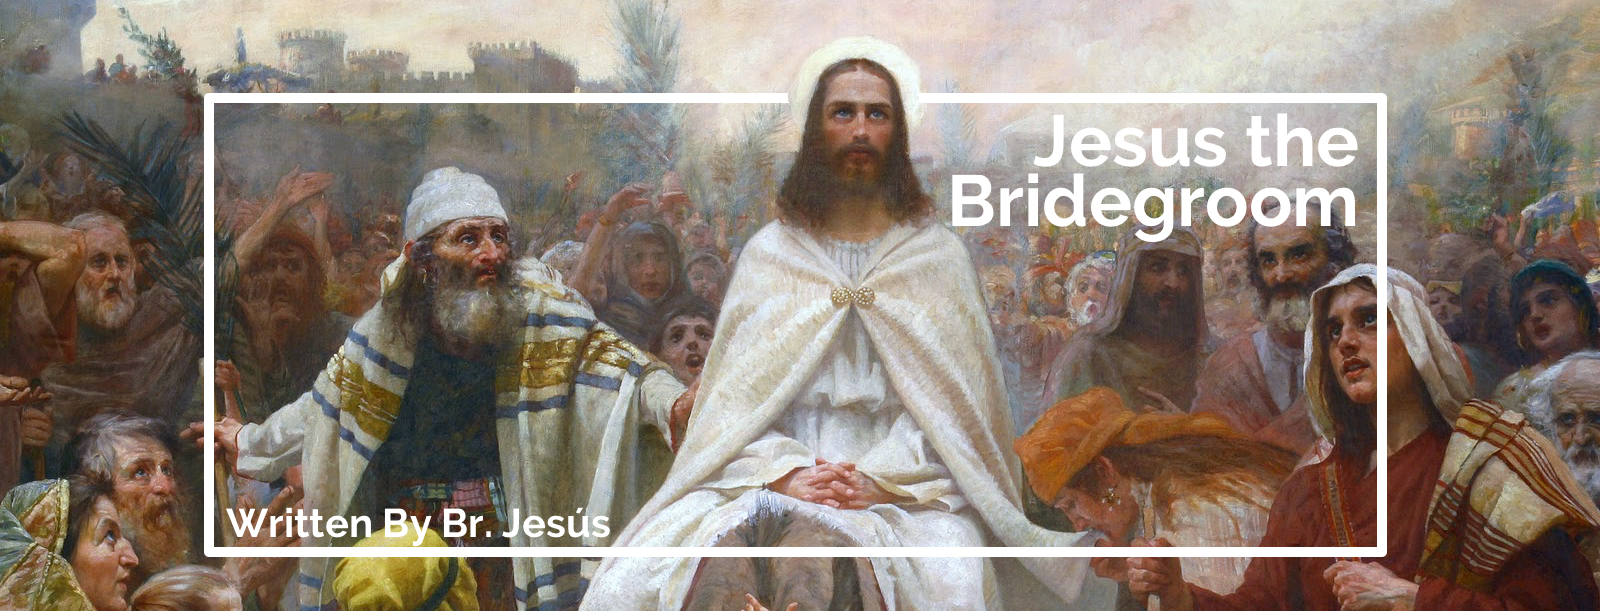 Jesus the Bridegroom | The Brothers of Saint John